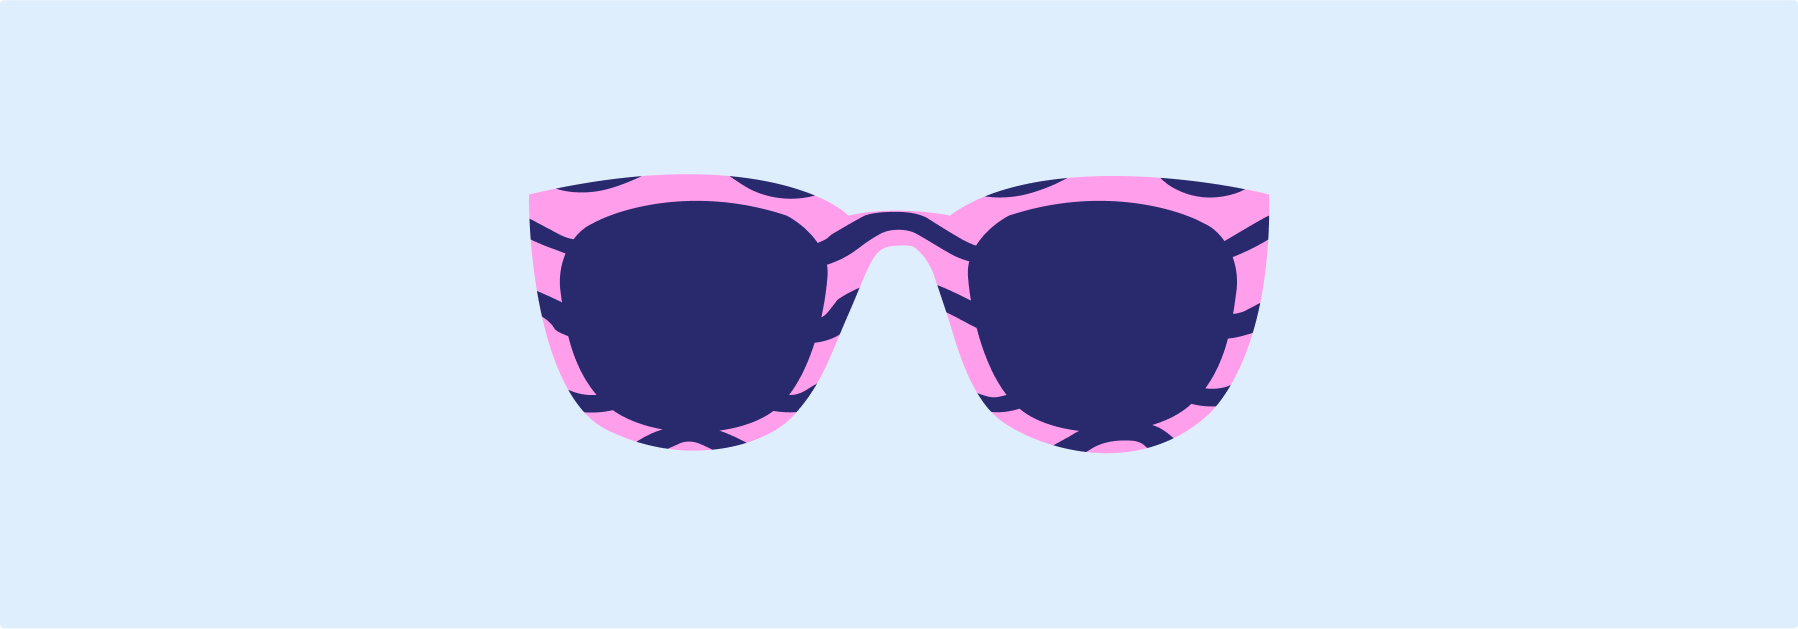 Sunglasses category